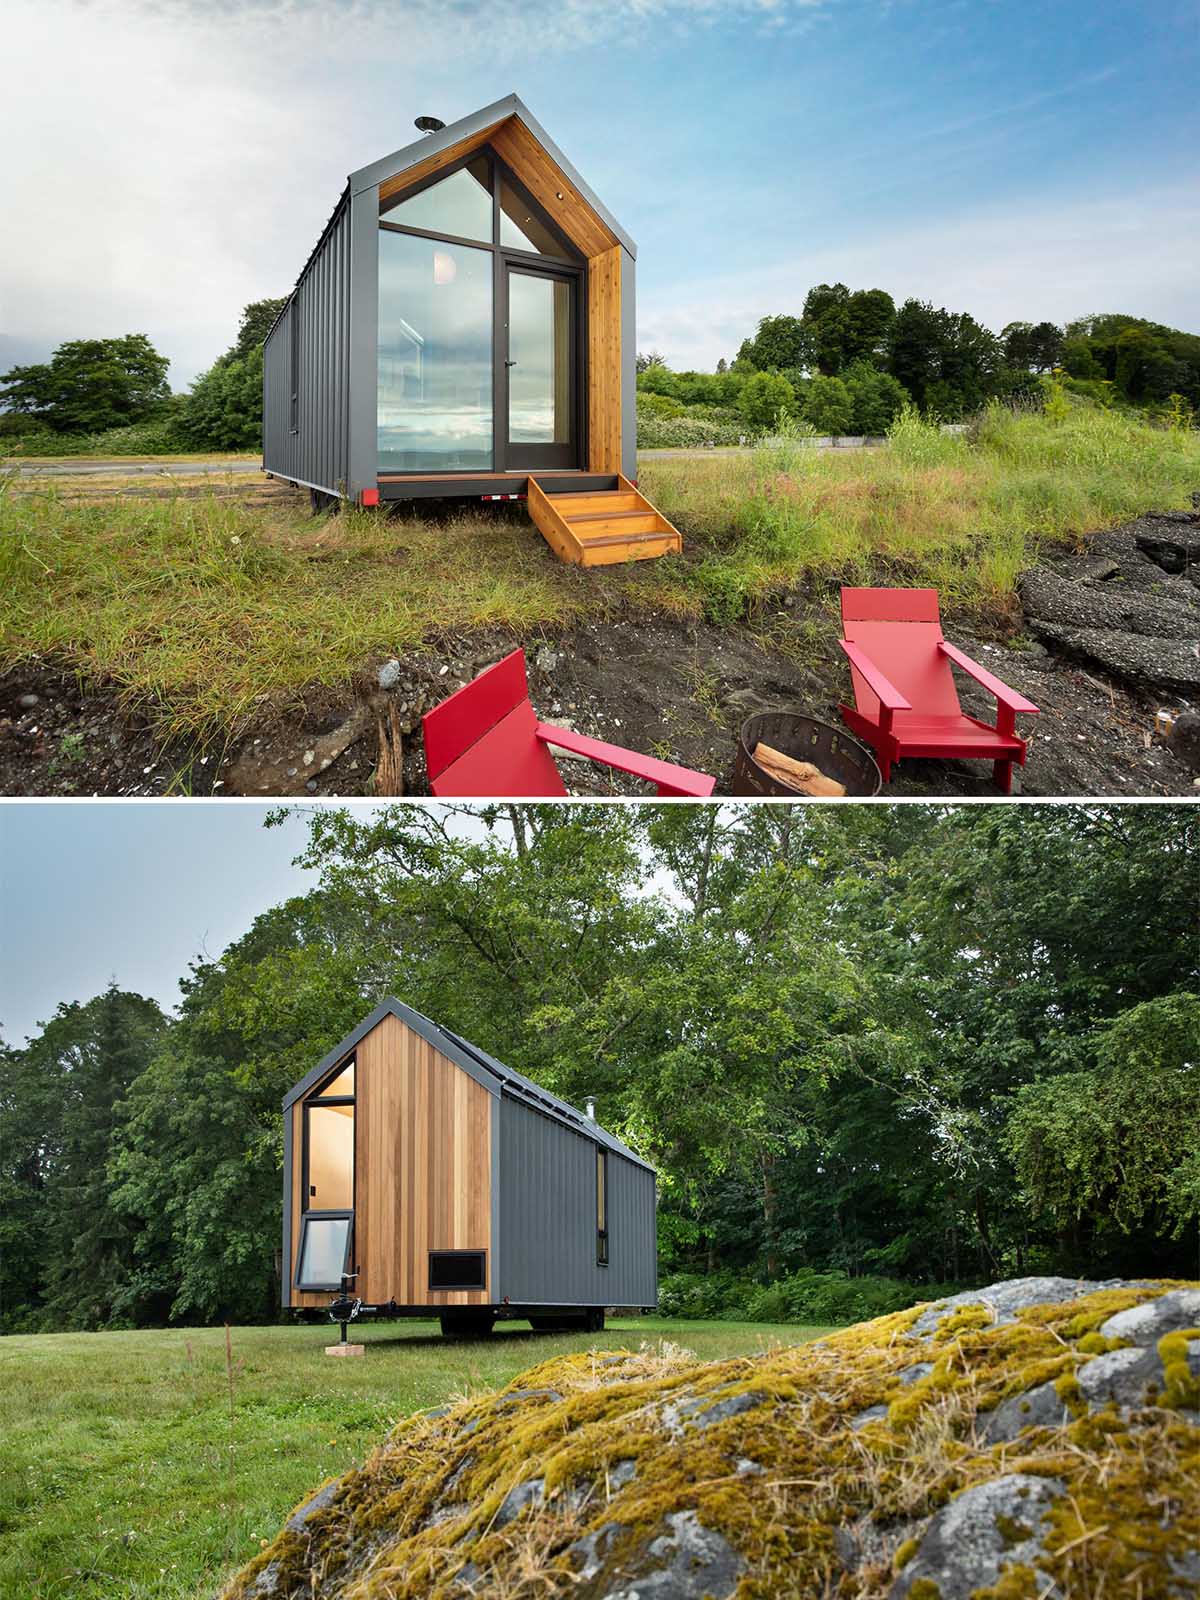 Этот современный крошечный дом имеет солнечную батарею на крыше, оснащенную батареями, металлический сайдинг со стоячим фальцем и акценты из кедра.